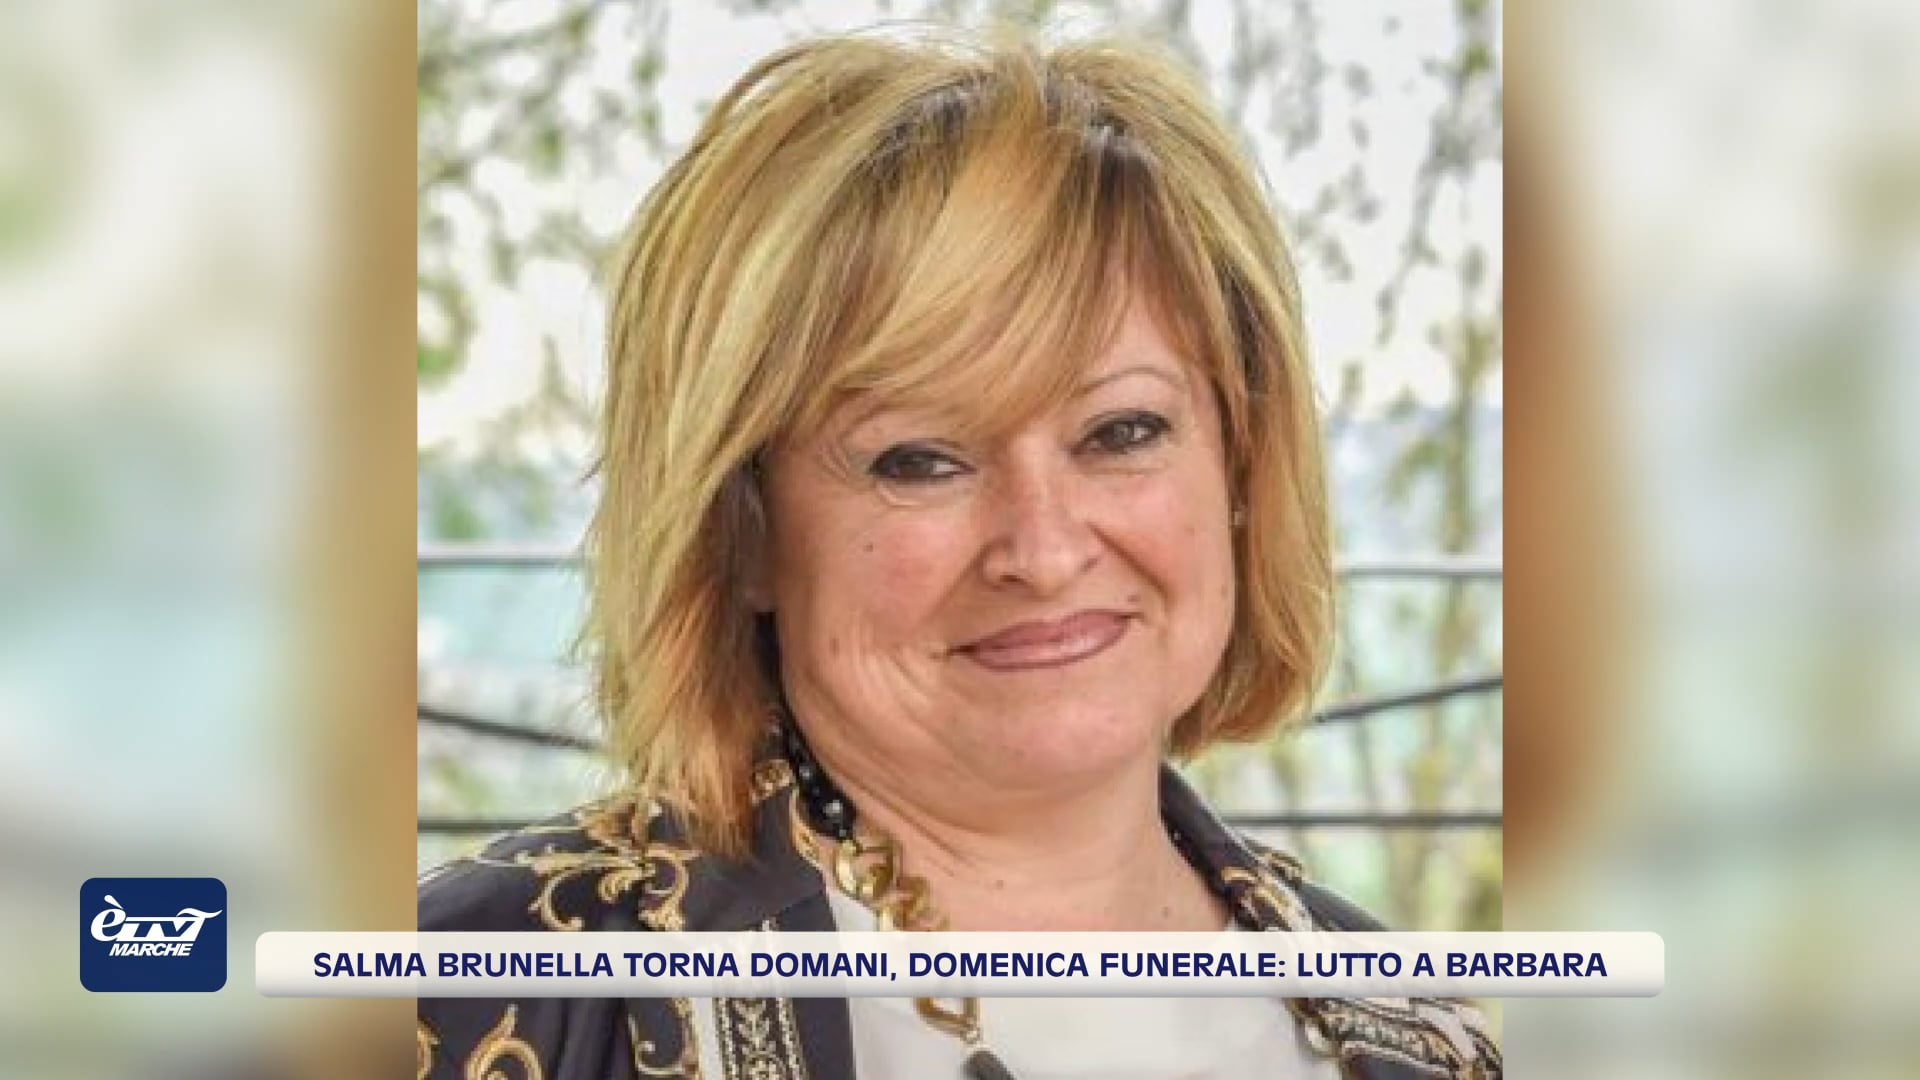 Salma Brunella torna domani, domenica funerale: lutto a Barbara - VIDEO